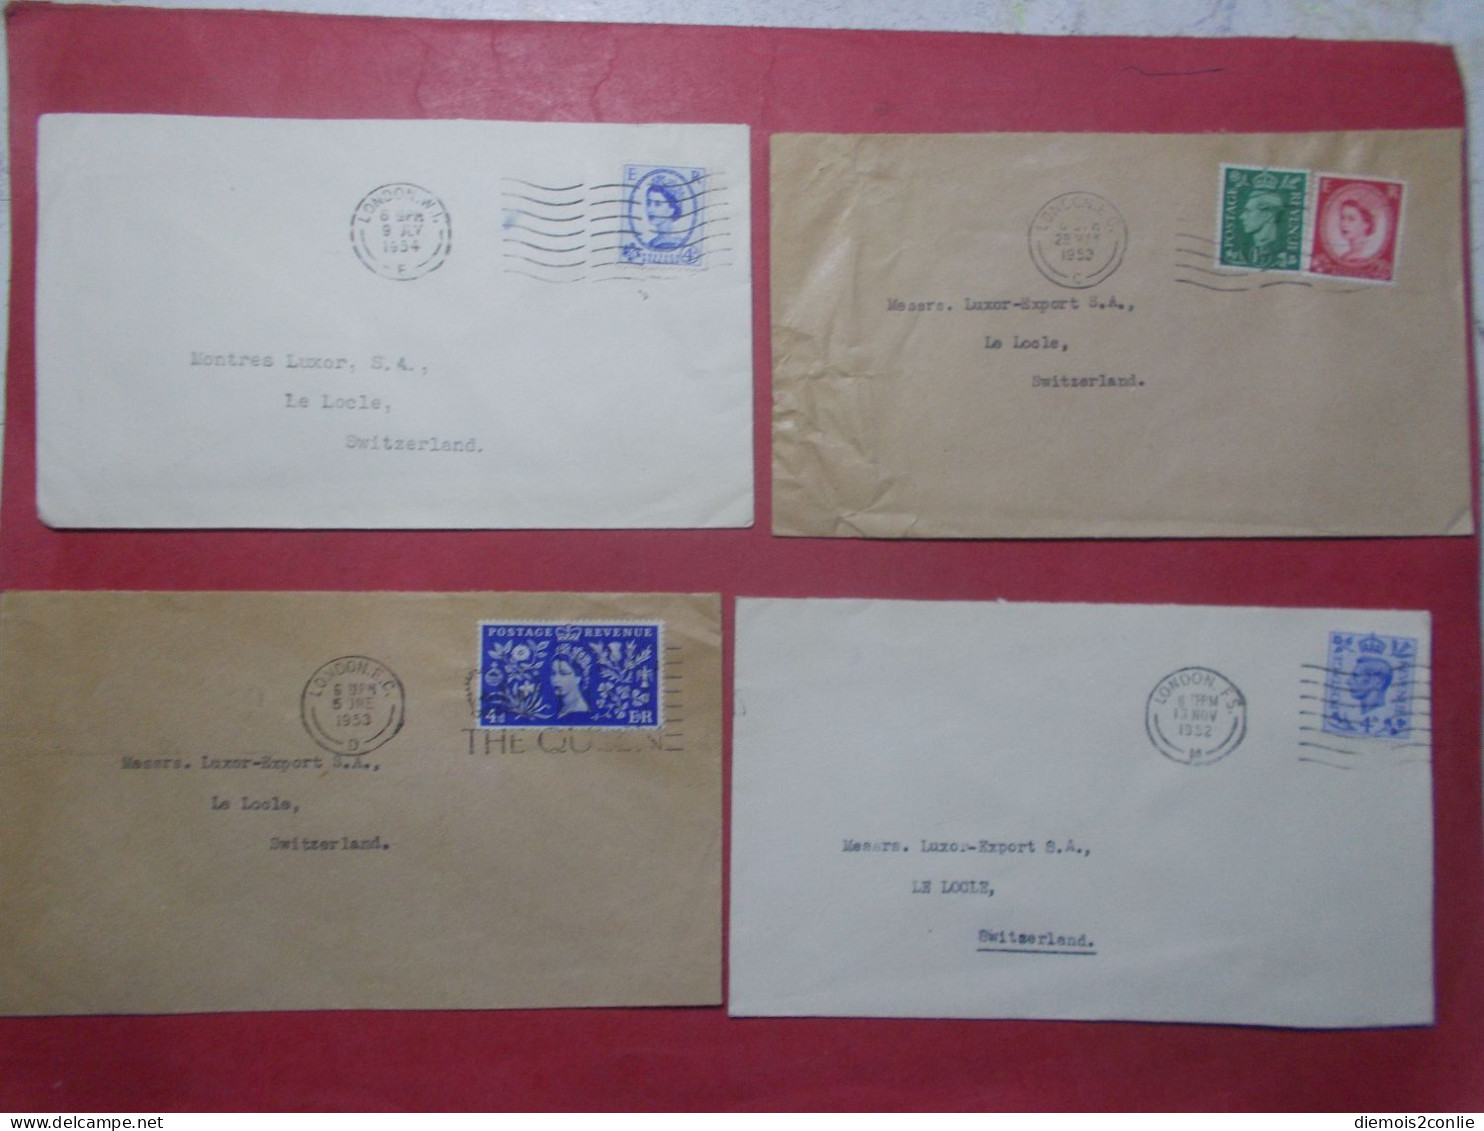 Marcophilie - Lot 4 Lettres Enveloppes Oblitérations Timbres ROYAUME UNI Destination SUISSE (B334) - Storia Postale